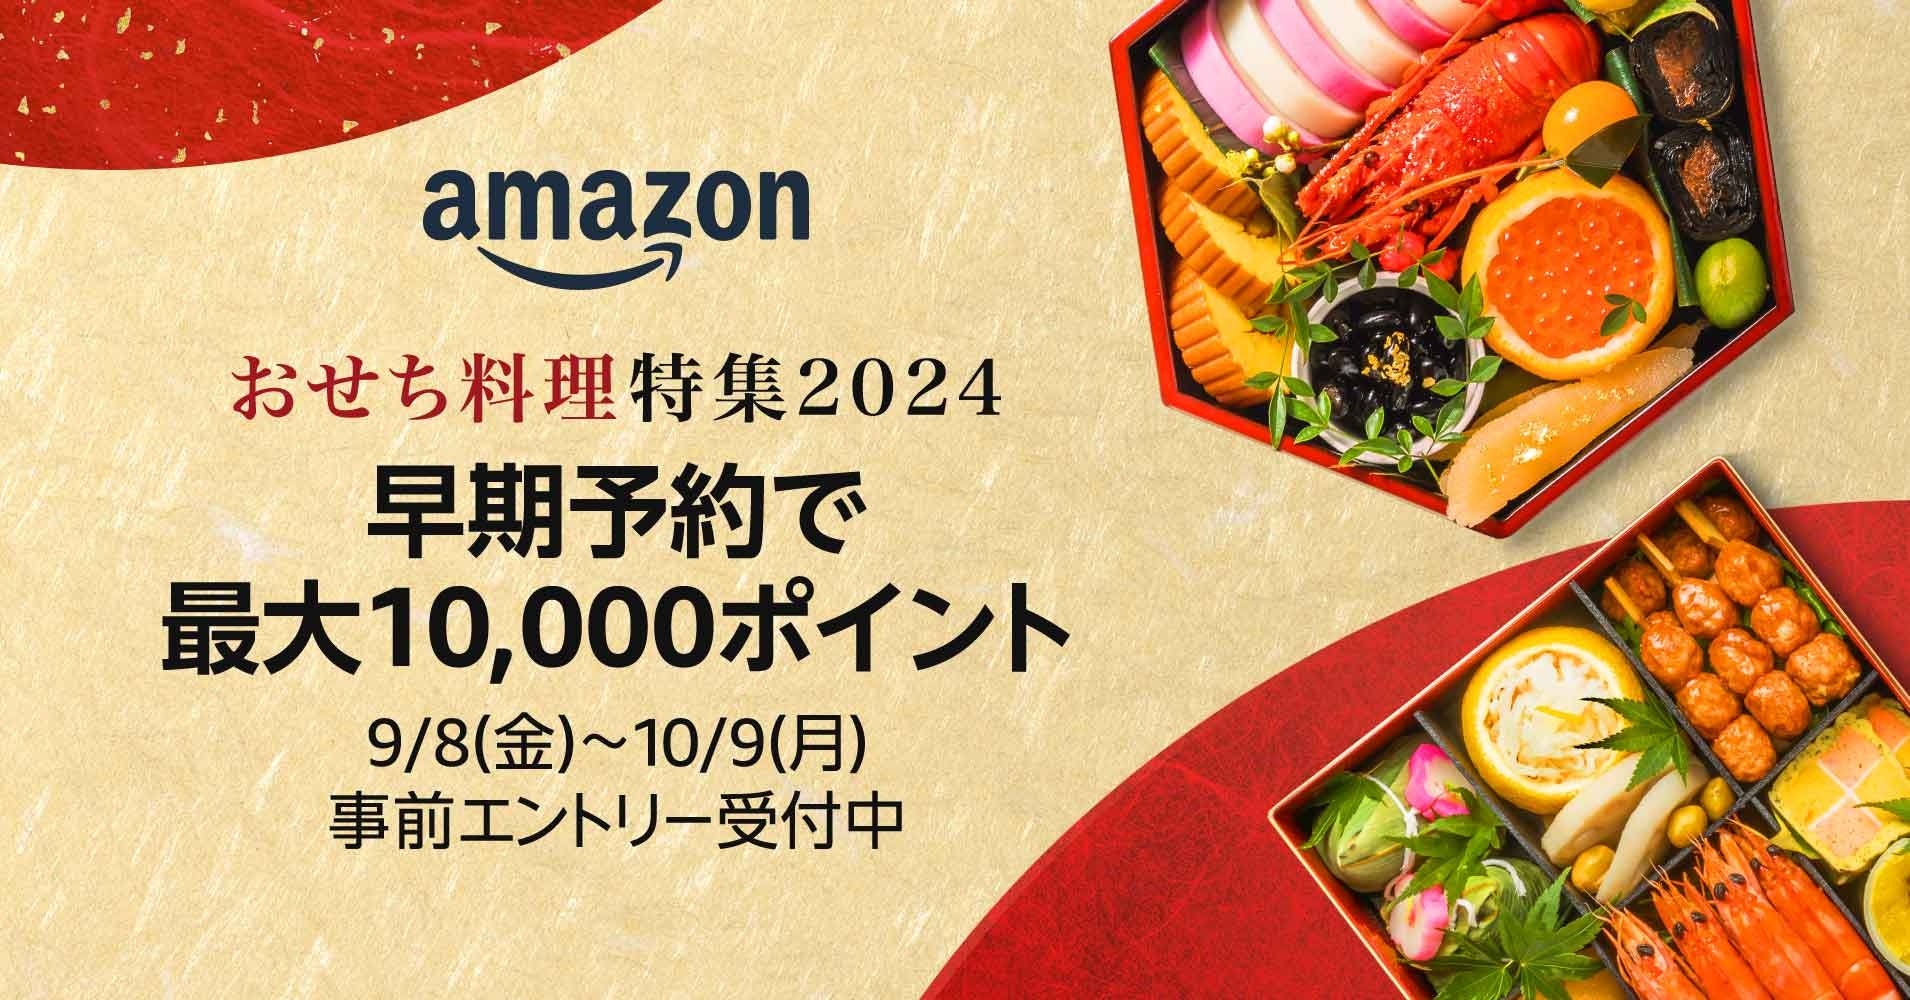 Amazon「おせち料理特集2024」がオープンし、最大10,000ポイントが付与される早期予約事前エントリーがスタート